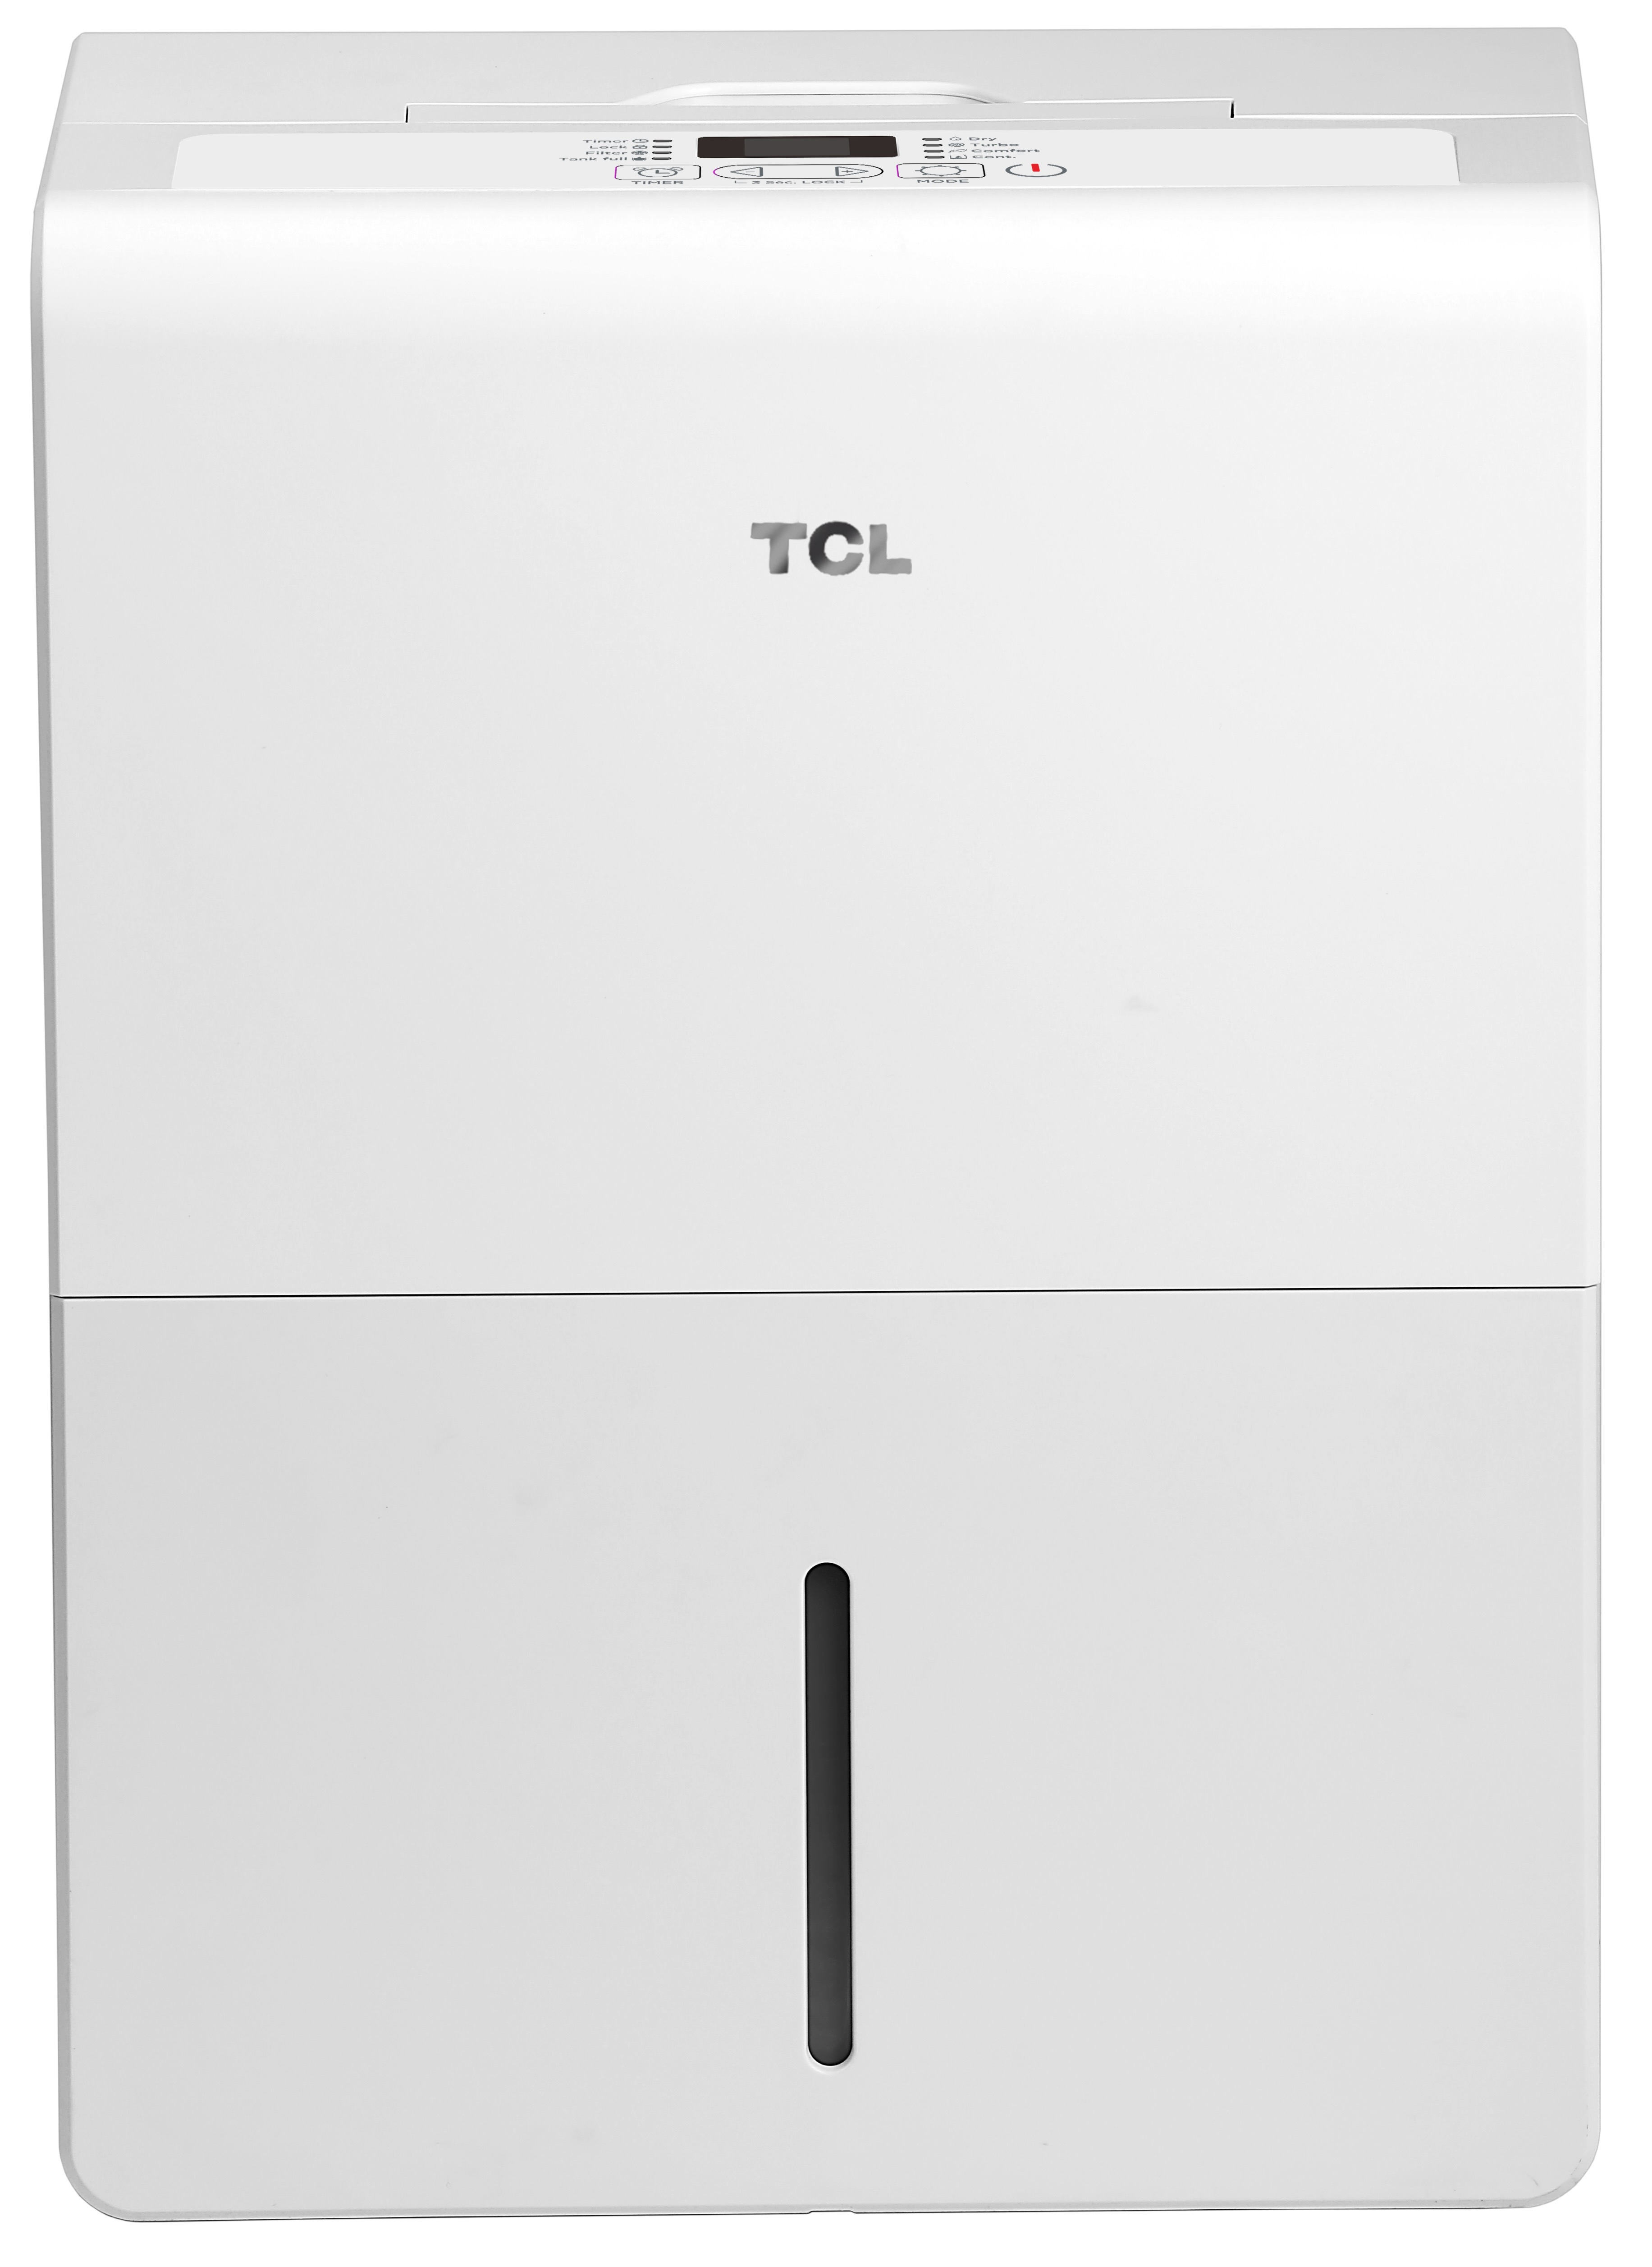 Осушитель воздуха TCL DEM50EB отзывы - изображения 5